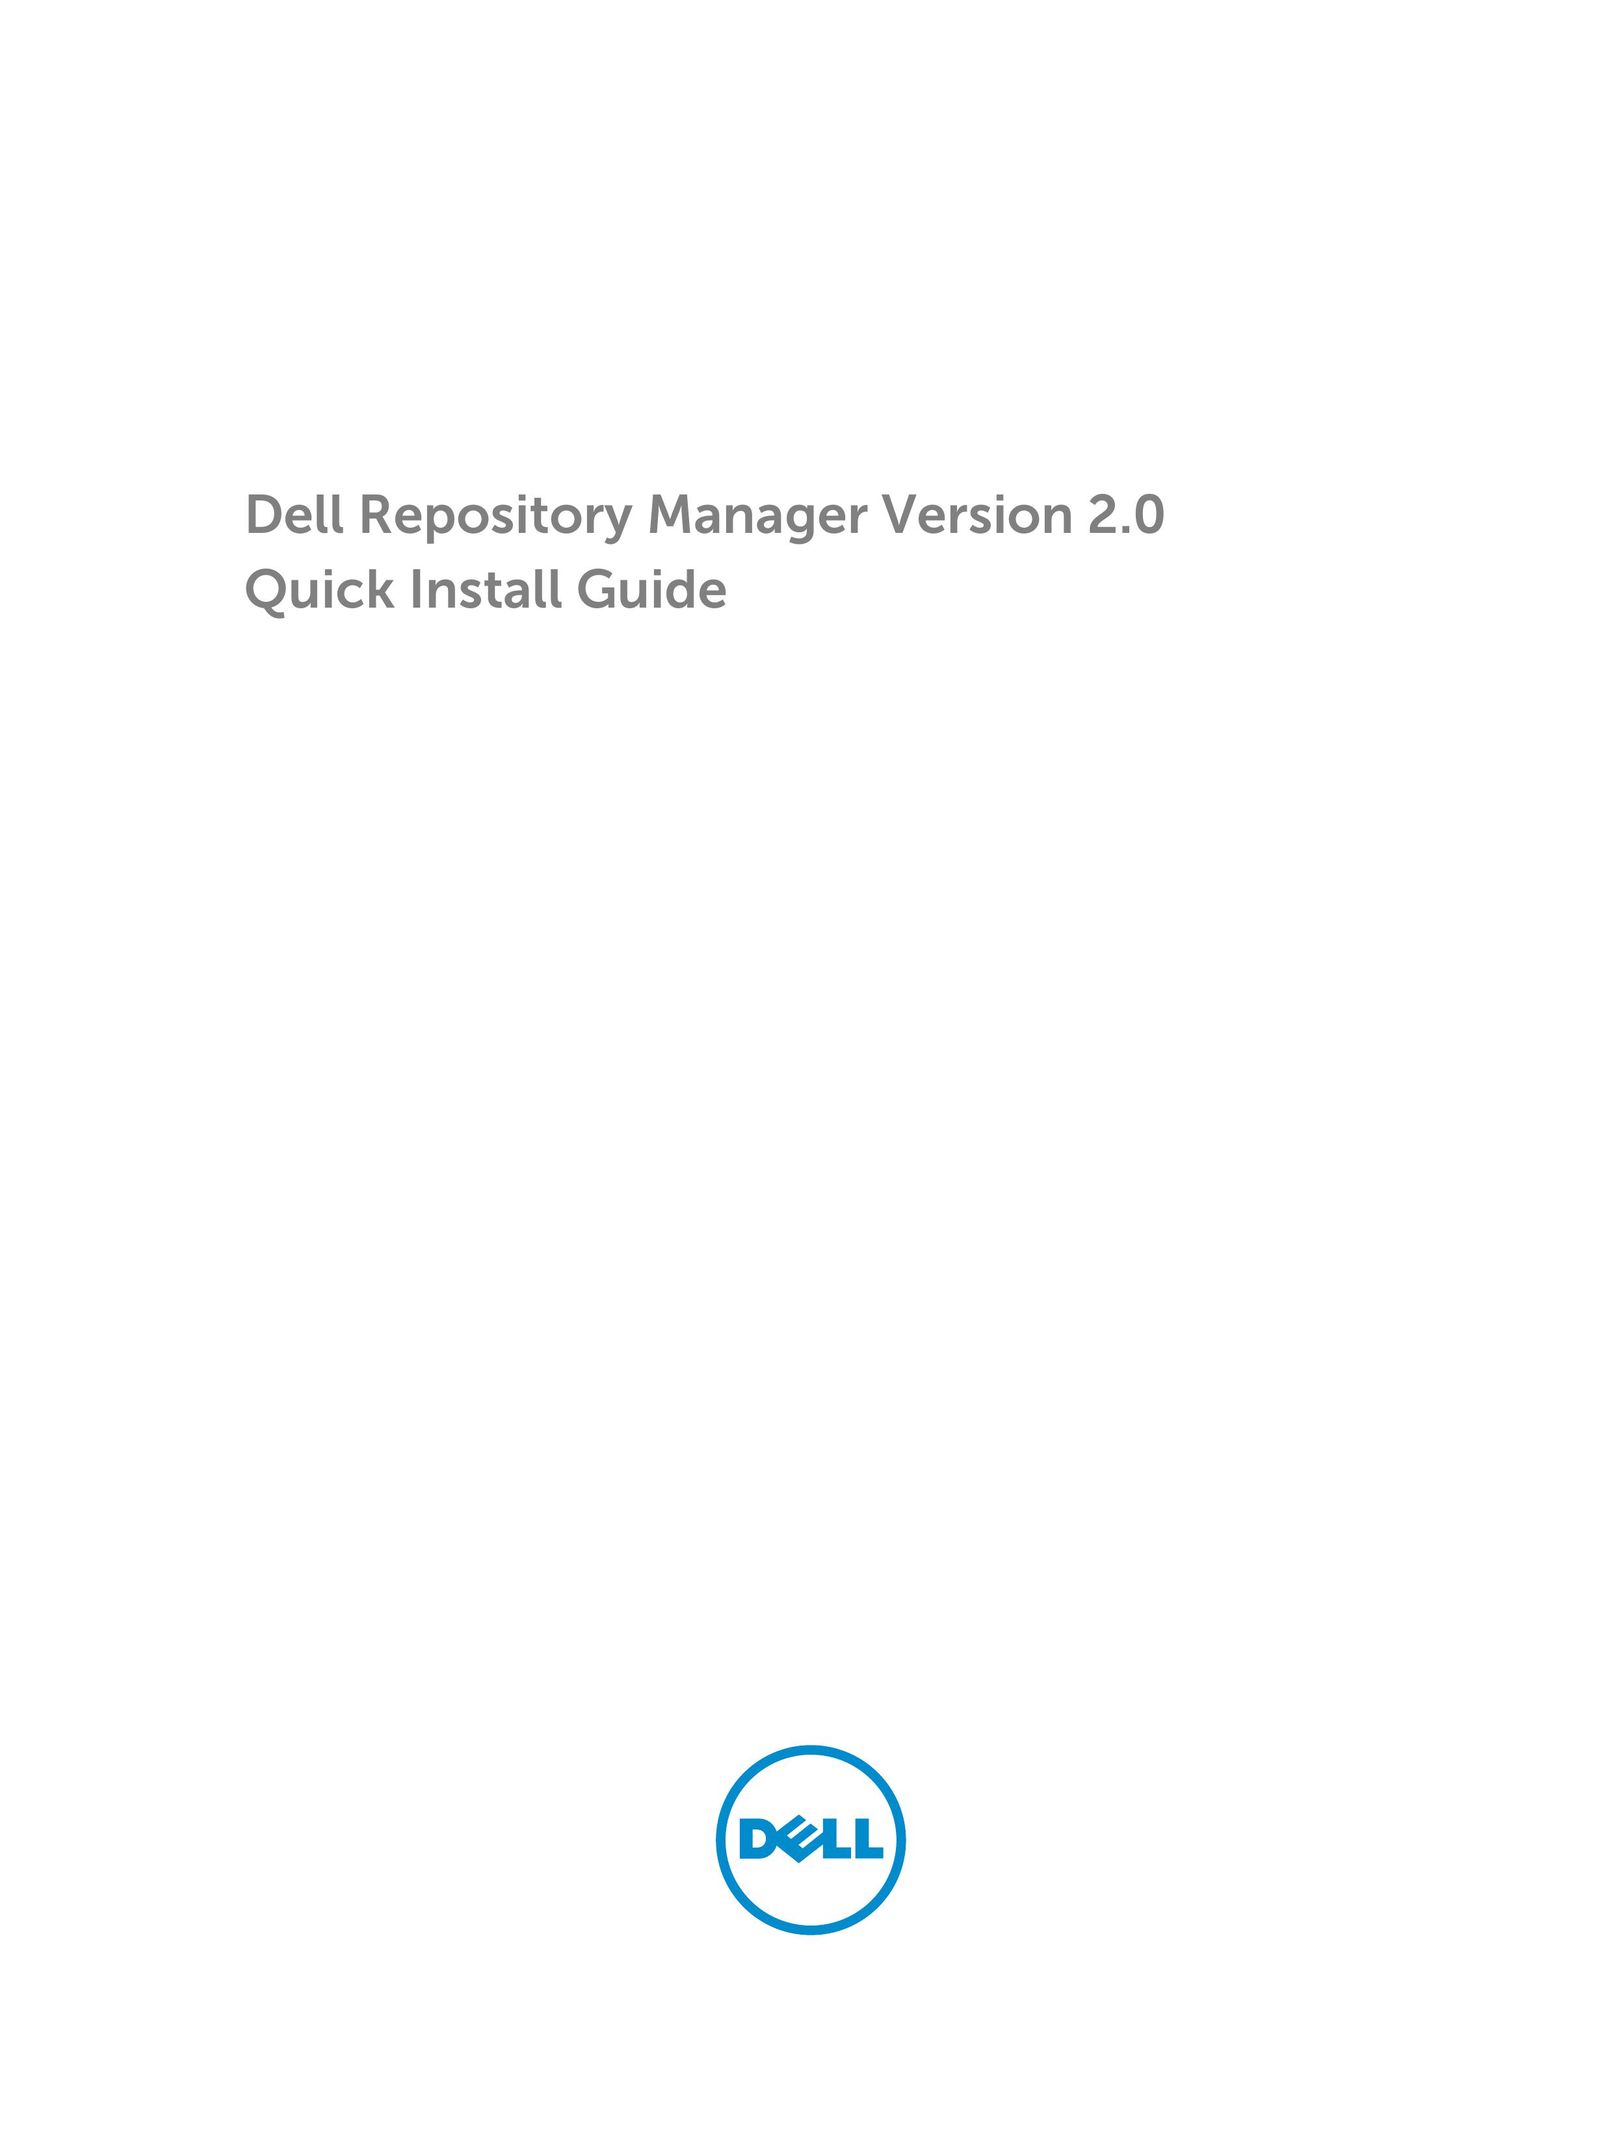 Dell Version 2 Doll User Manual